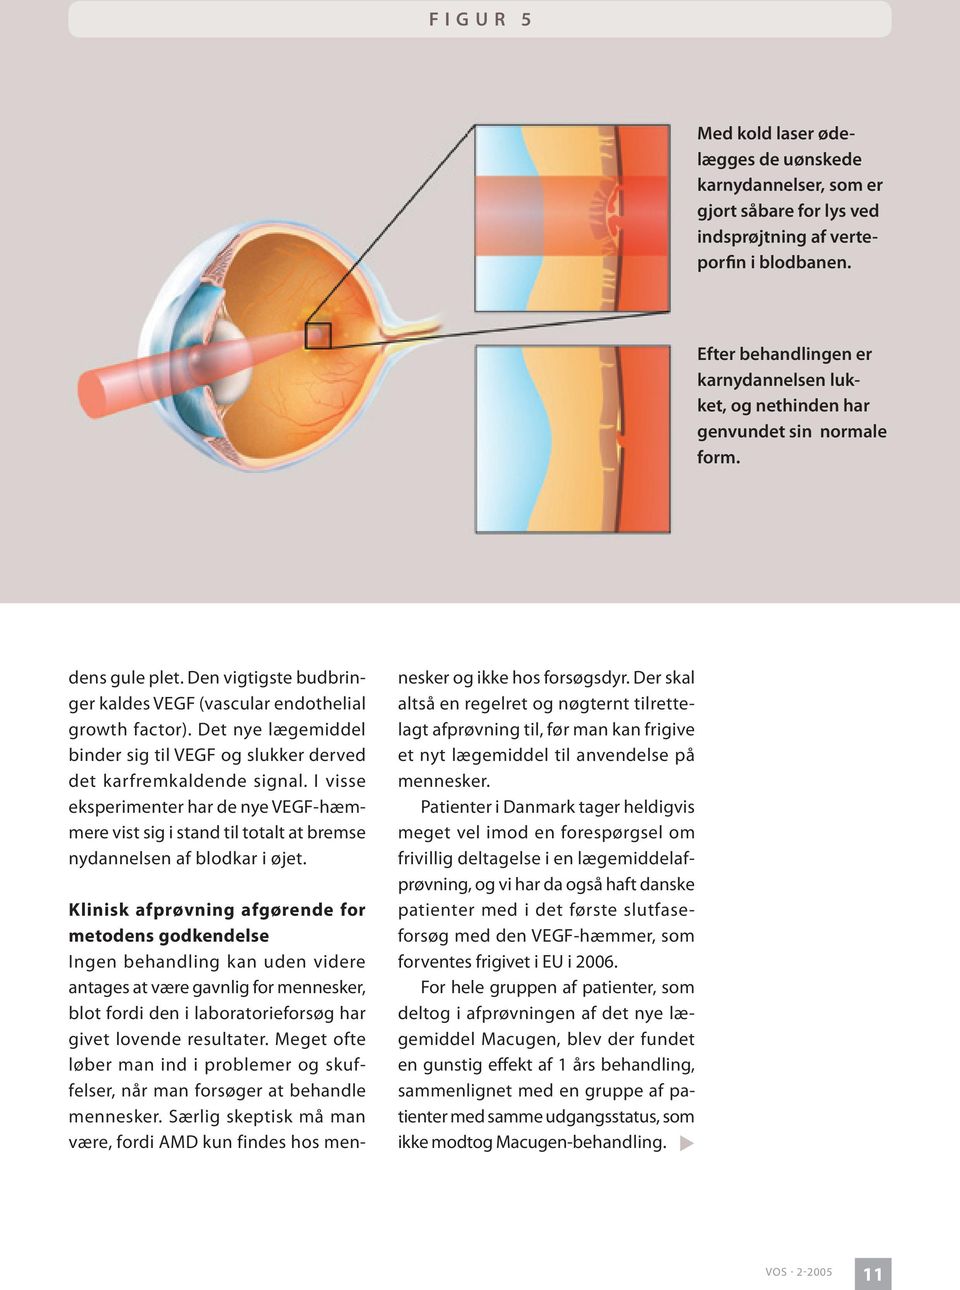 Det nye lægemiddel binder sig til VEGF og slukker derved det karfremkaldende signal. I visse eksperimenter har de nye VEGF-hæmmere vist sig i stand til totalt at bremse nydannelsen af blodkar i øjet.